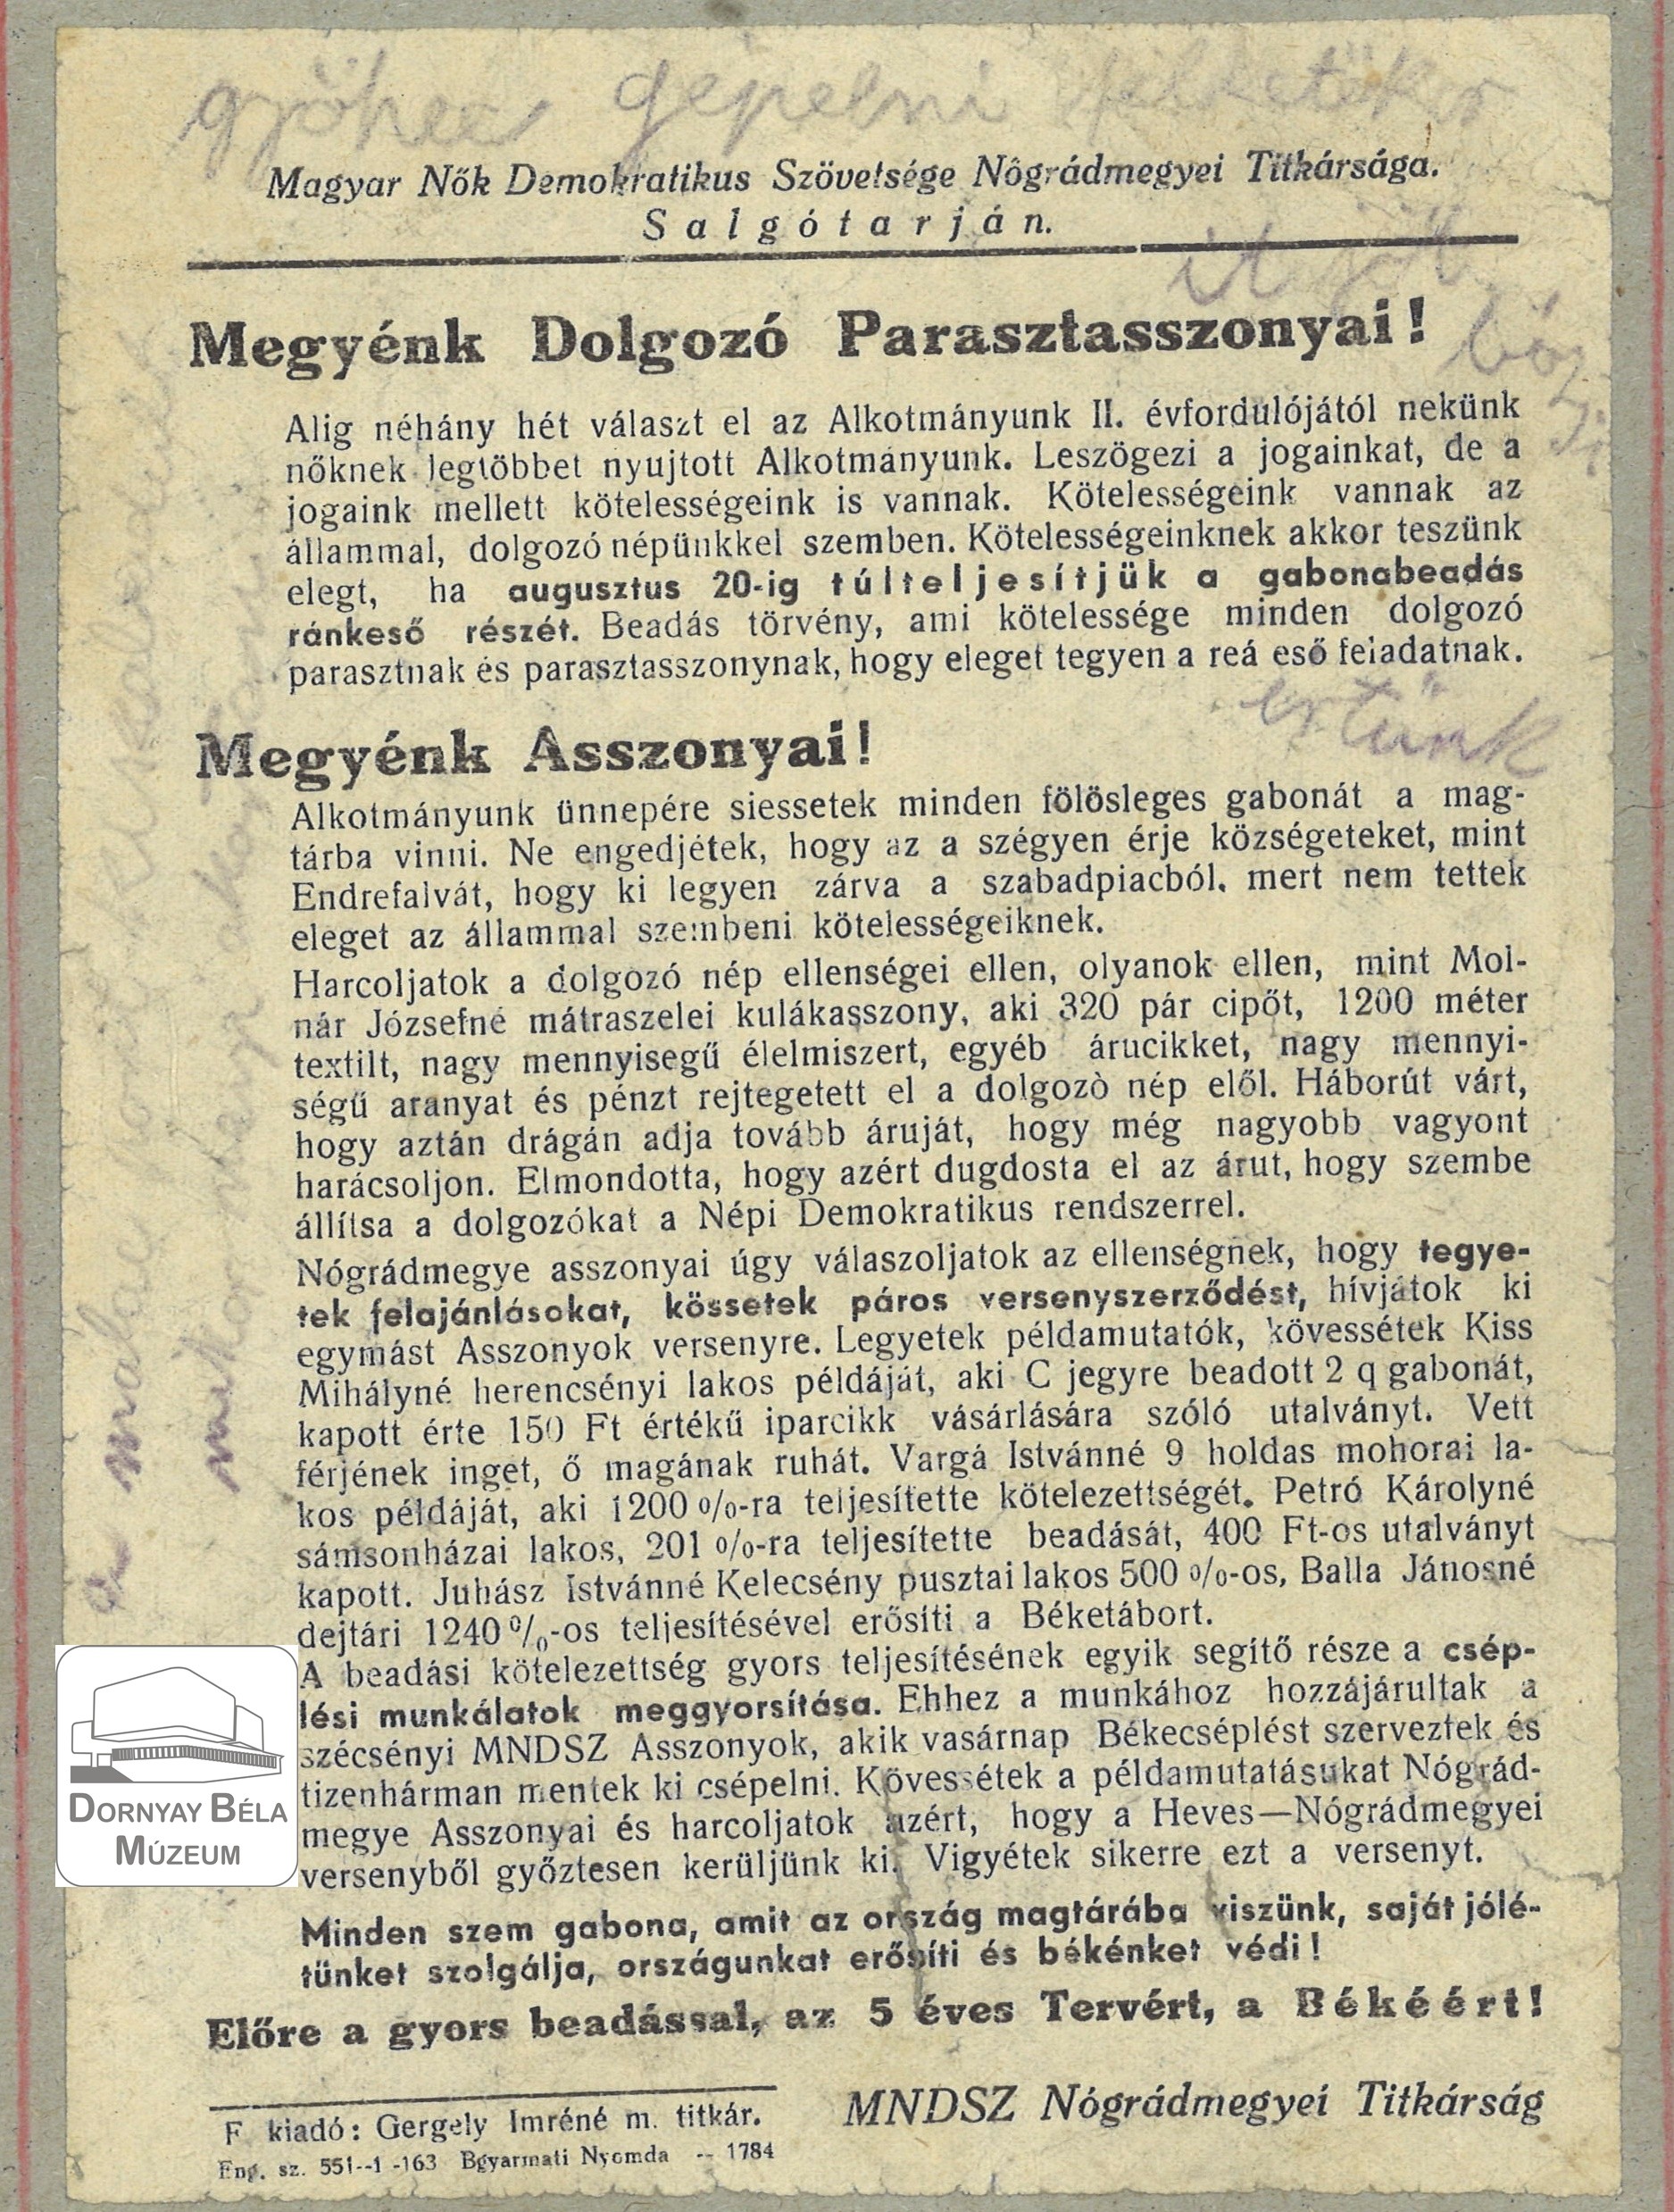 MNDSZ Nógrád megyei Titkárságának felhívása megyénk dolgozó parasztasszonyaihoz. (Dornyay Béla Múzeum, Salgótarján CC BY-NC-SA)